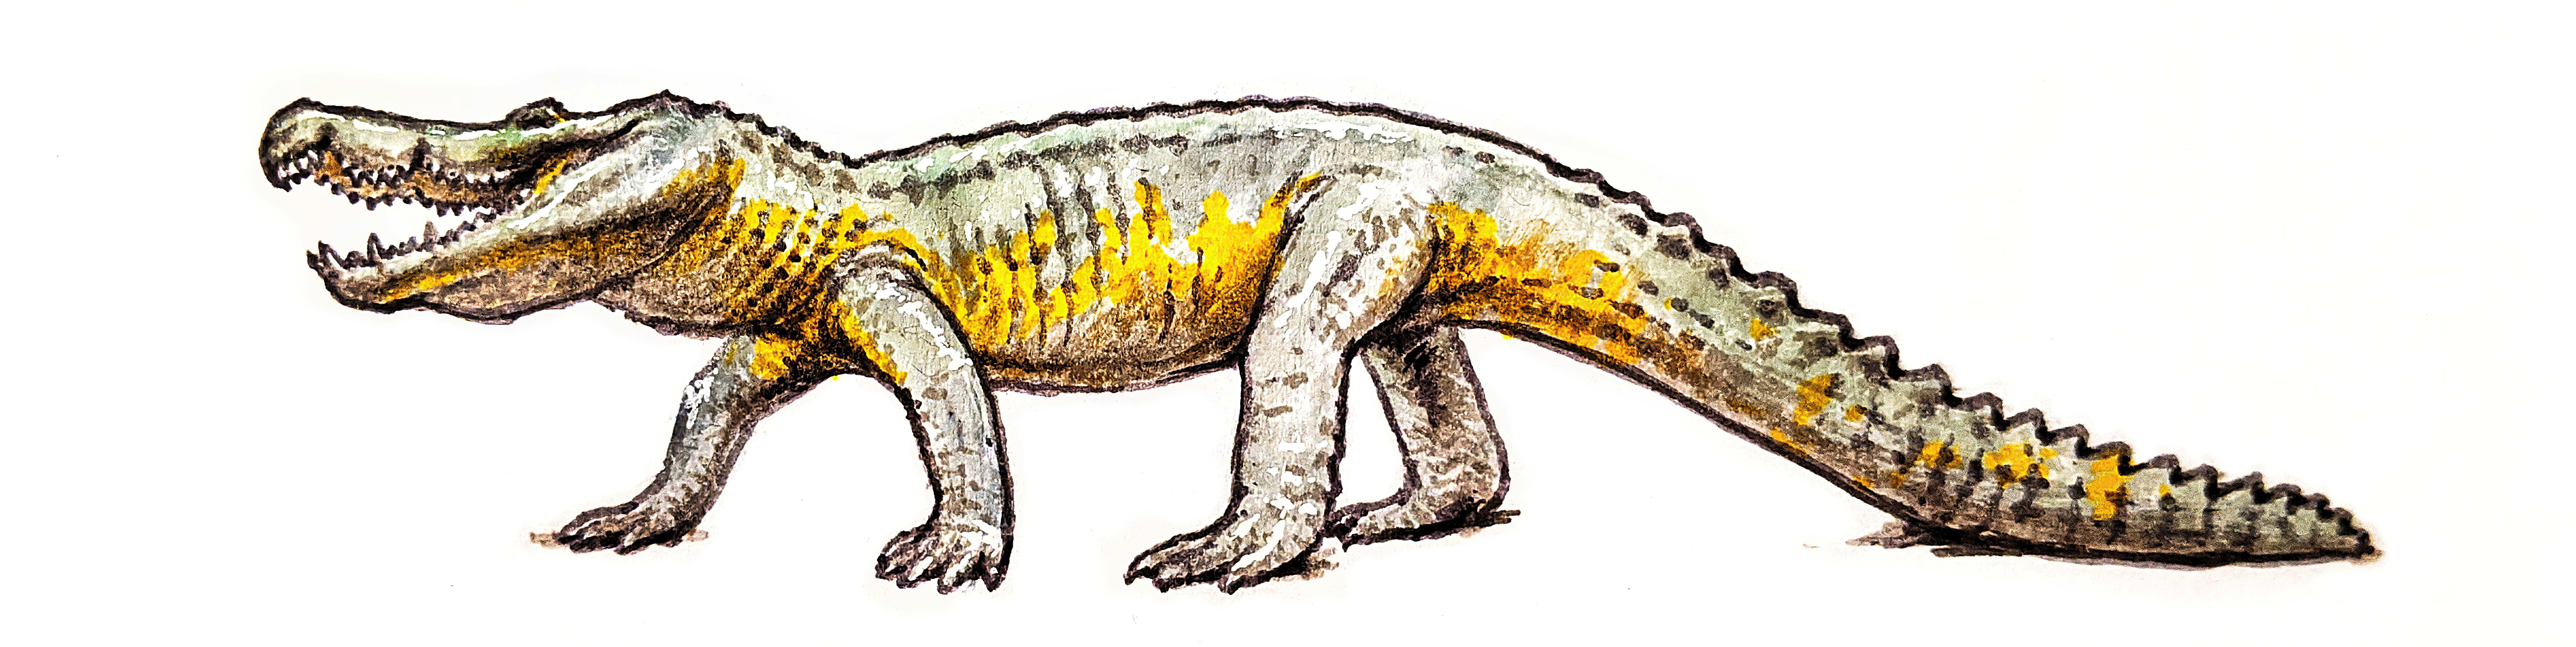 Colored-in crocodile